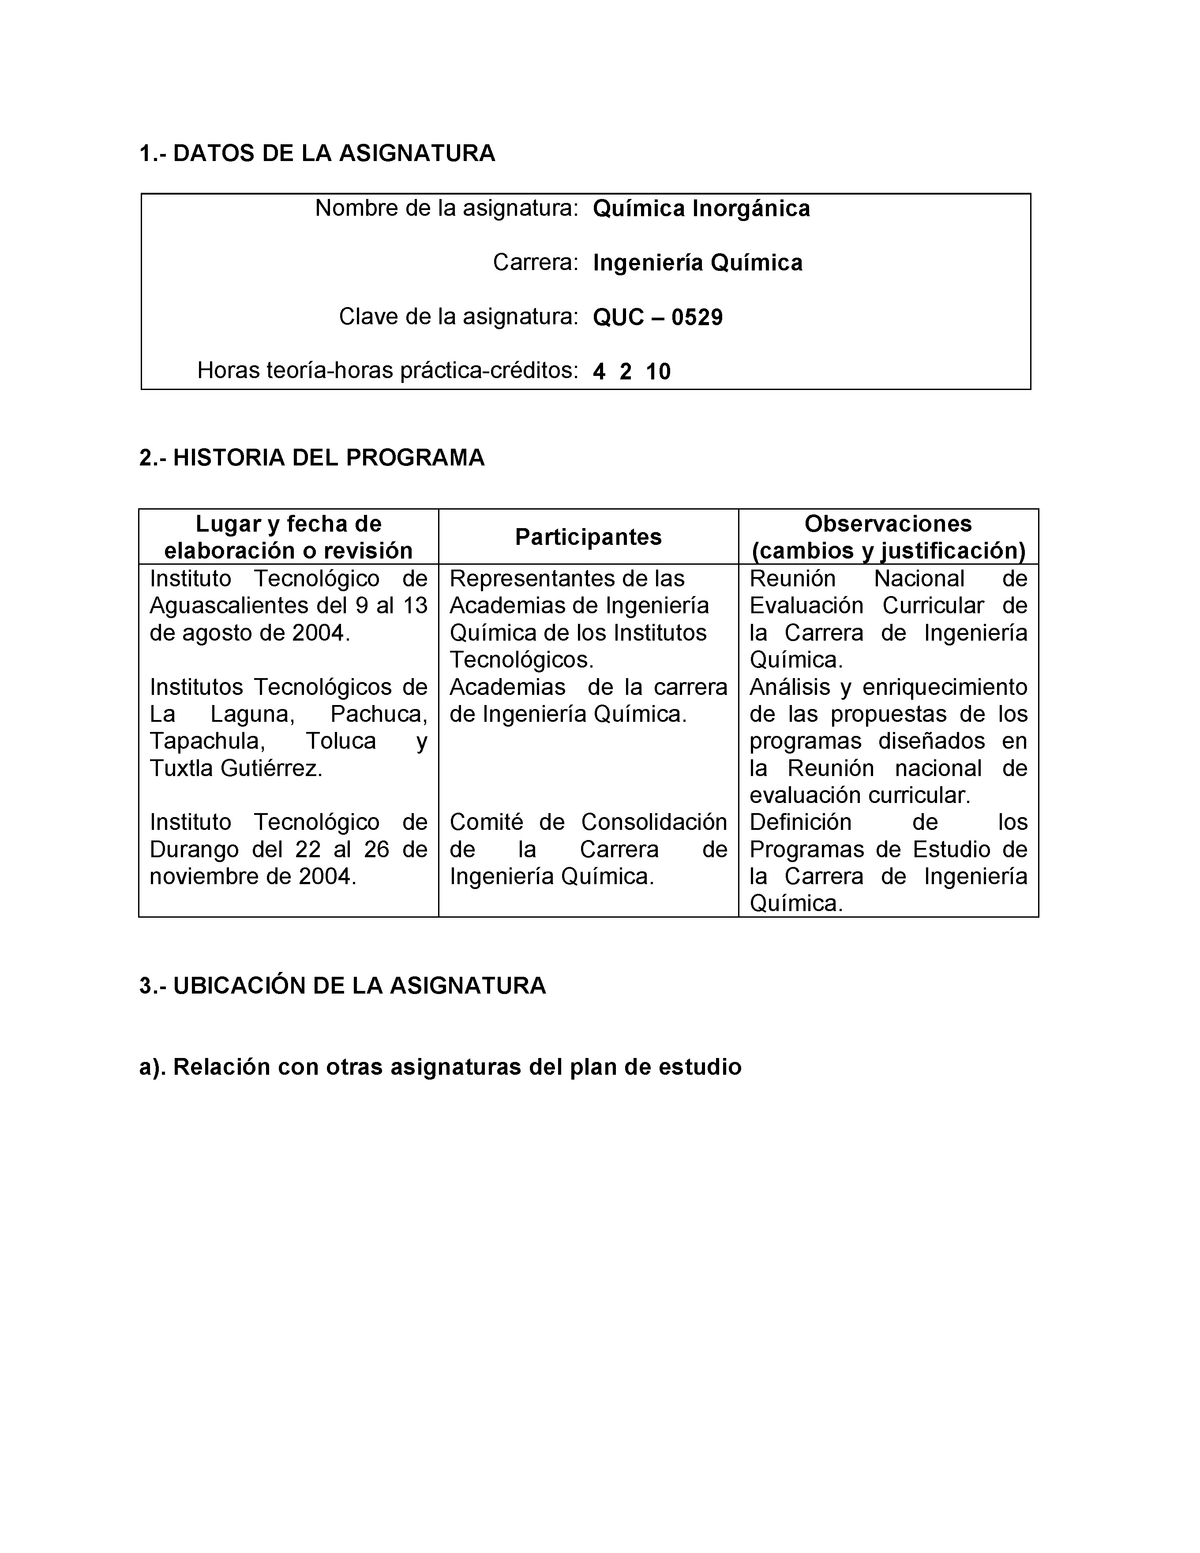 Quimica Inorganica Resumen Analisis Instrumental Q00961 Studocu